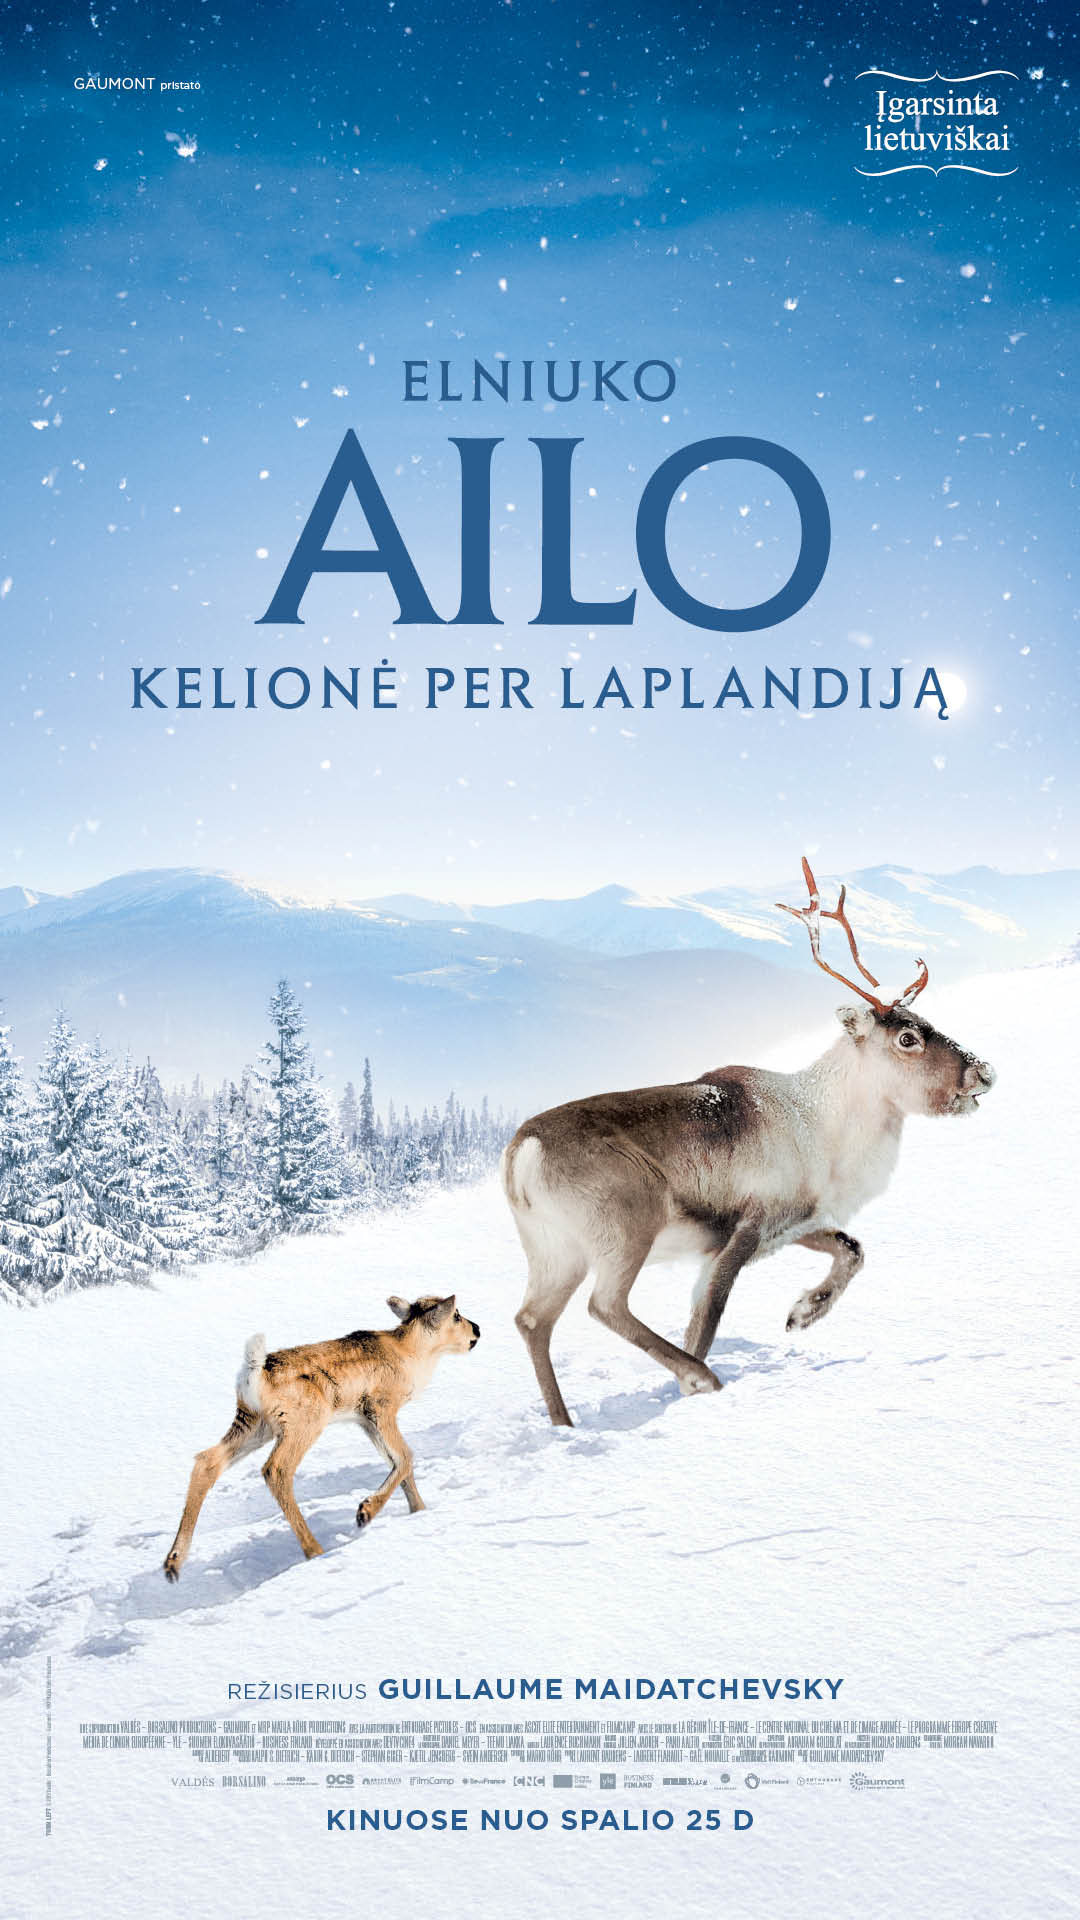 Elniuko Ailo kelionė per Laplandiją (Aïlo: Une odyssée en Laponie)